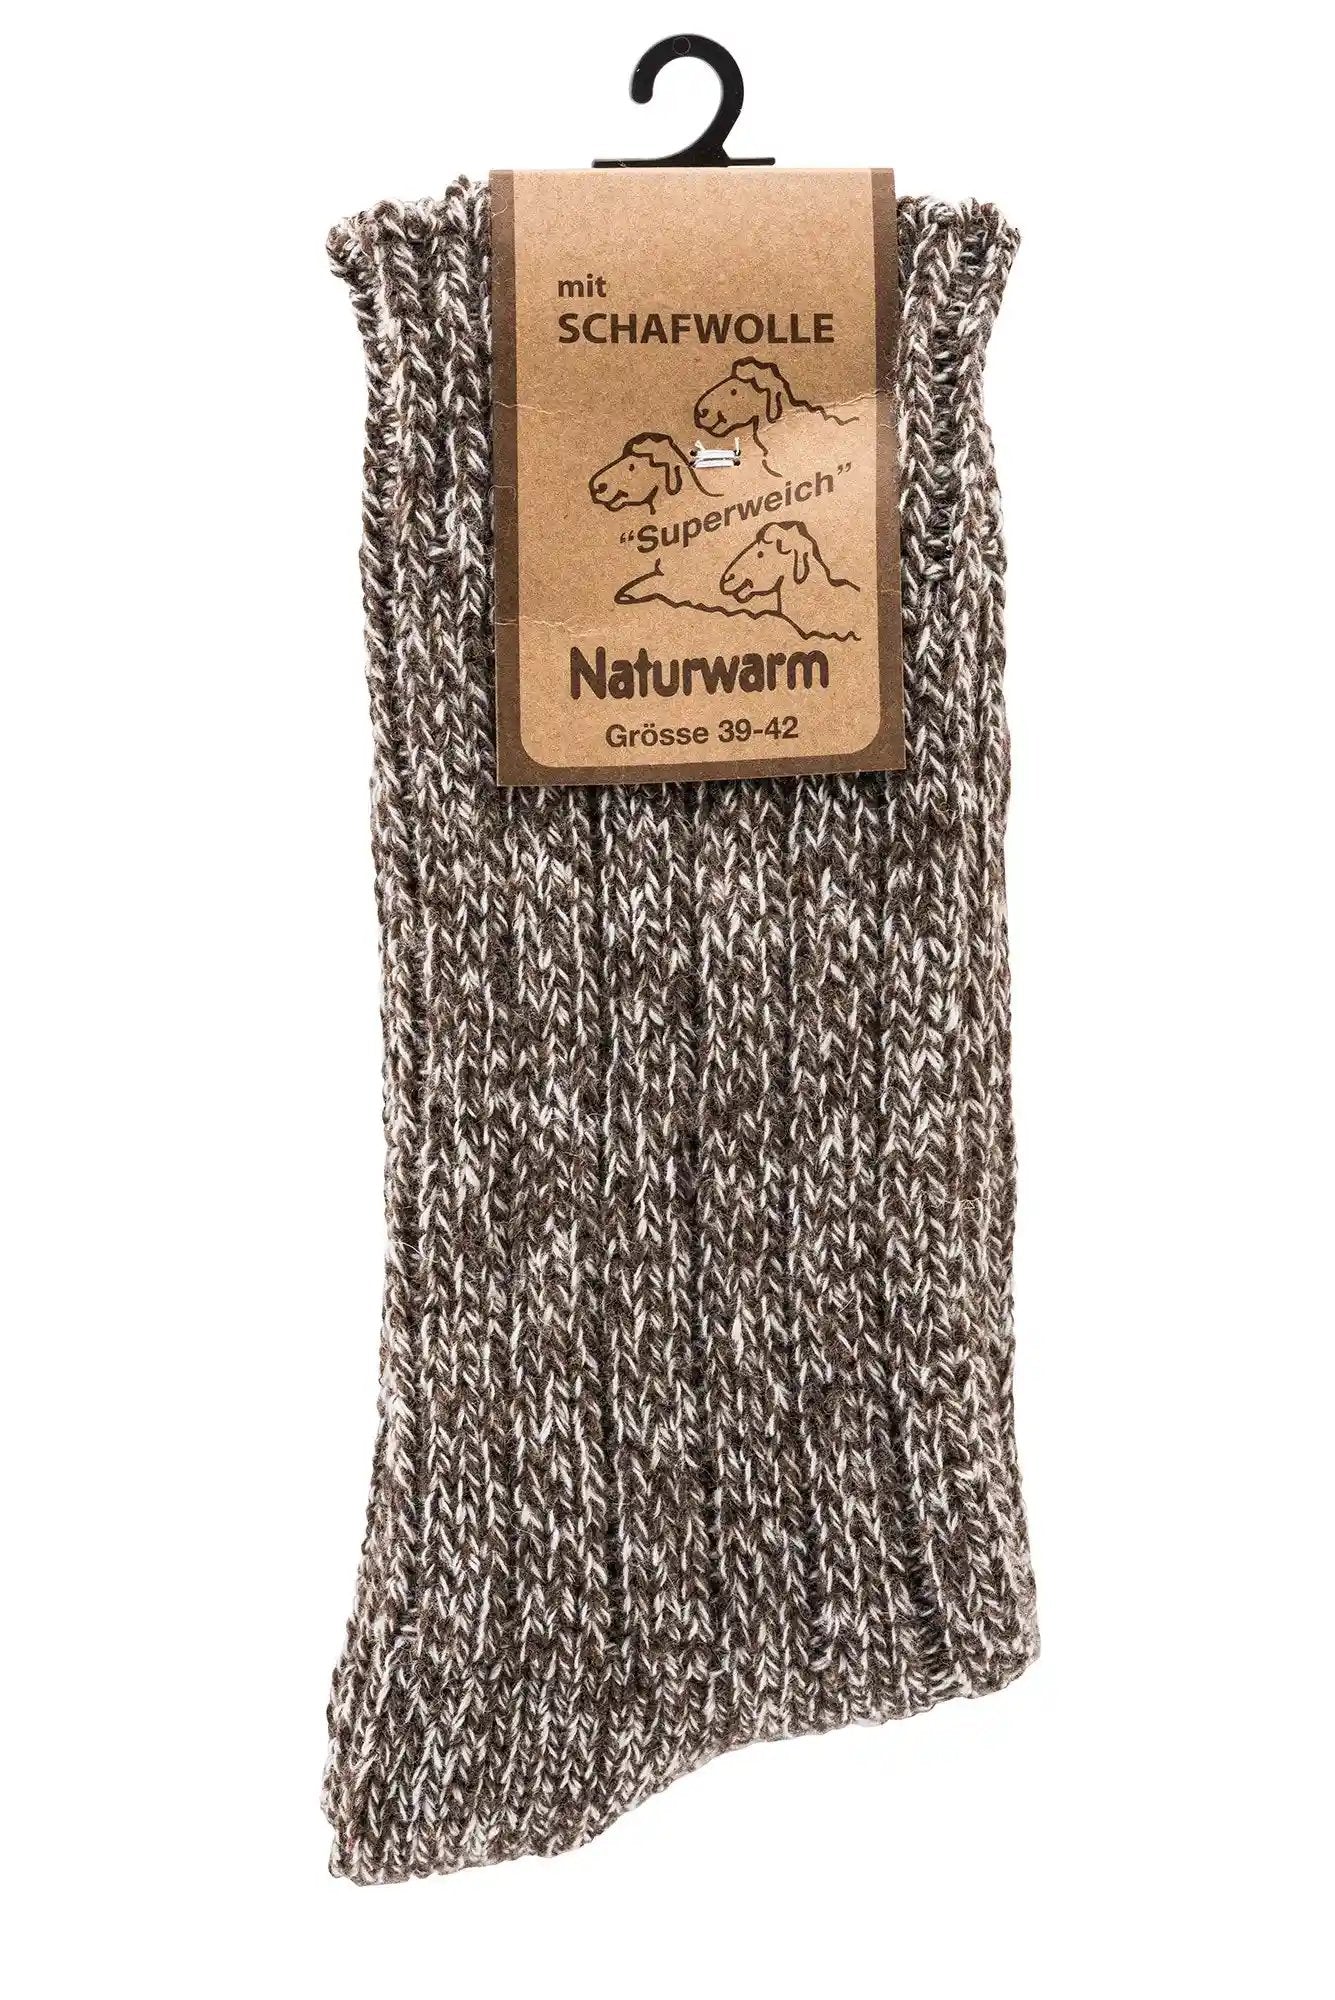 3 oder 6 Paar warme weiche Norweger Socken mit Wolle Baumwolle Viskose